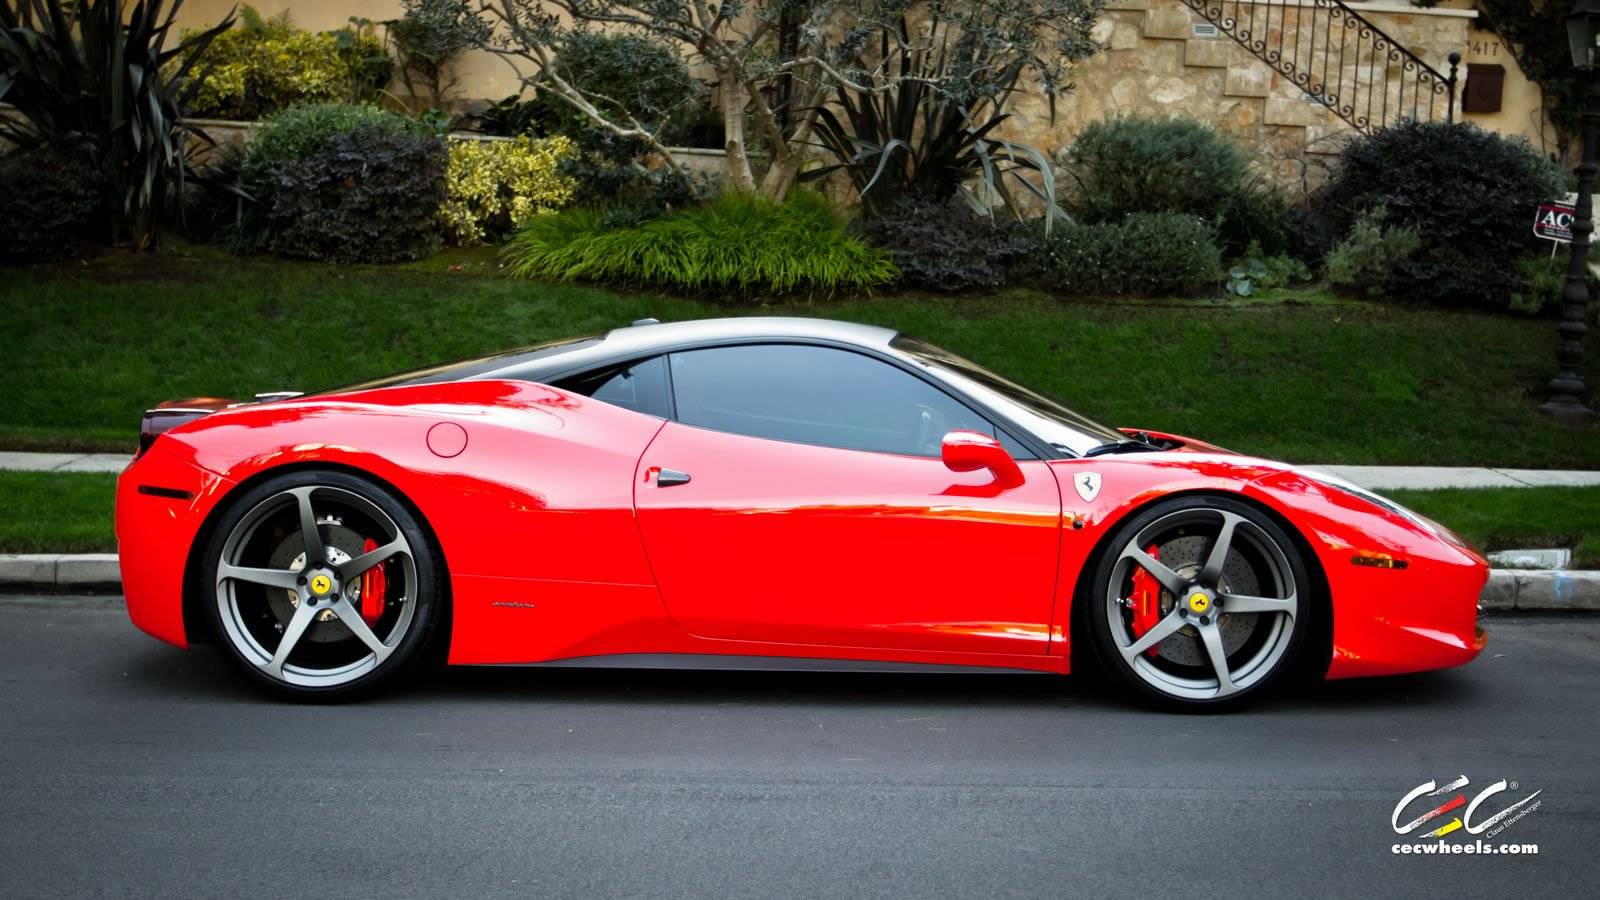 Ferrari 458 italia итальянский суперкар за $272 000